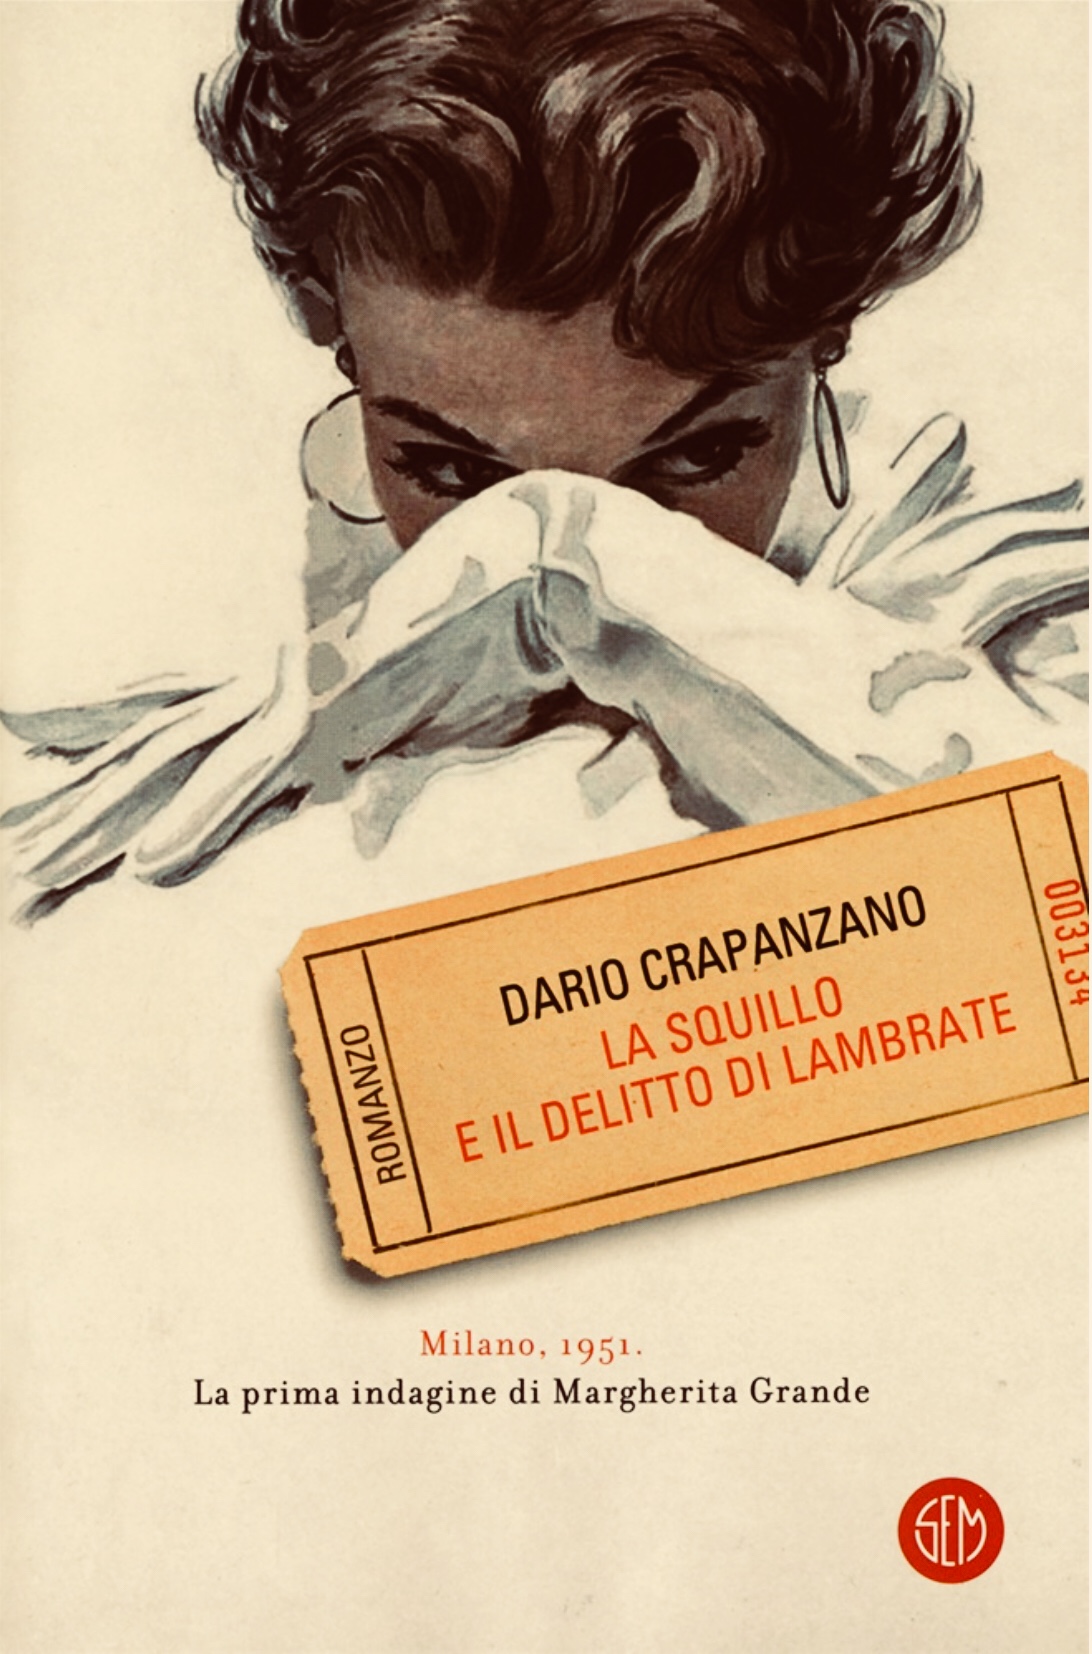 Libri a Milano, “La squillo ed il delitto di Lambrate”